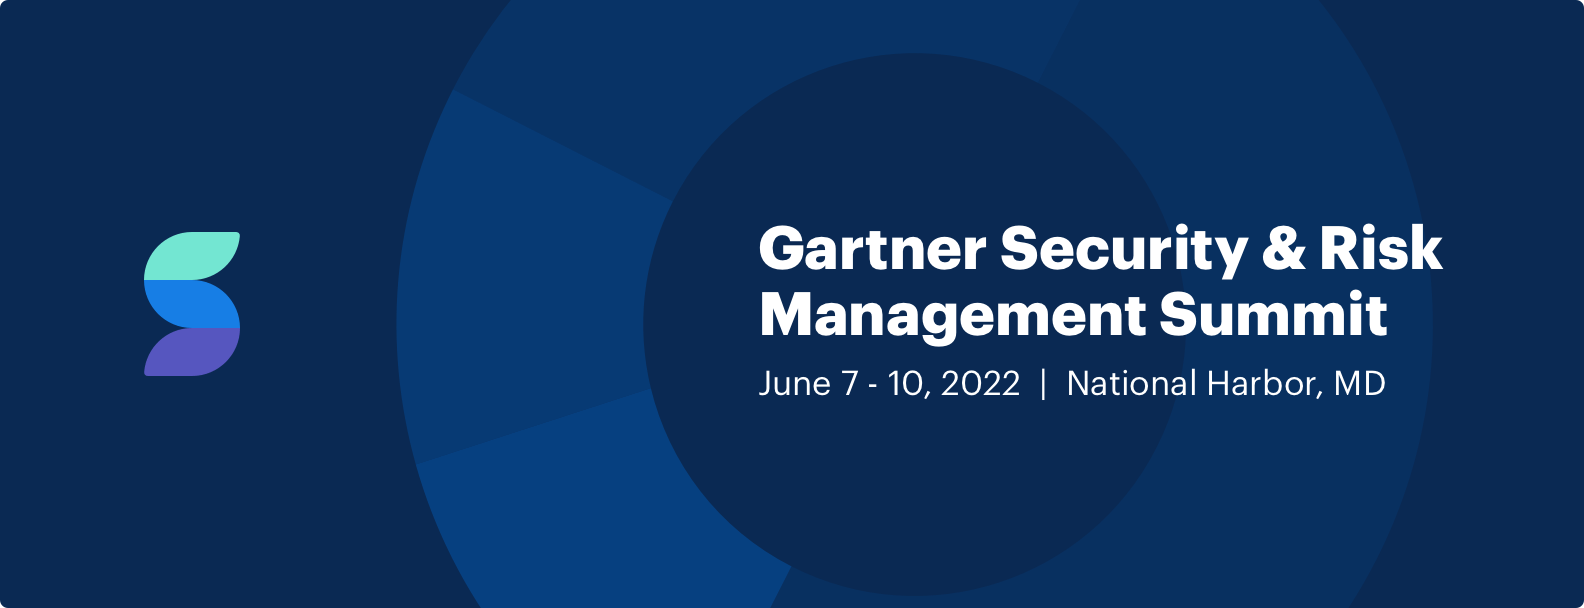 Secureframe is a Silver Sponsor at Gartner Security & Risk Management Summit